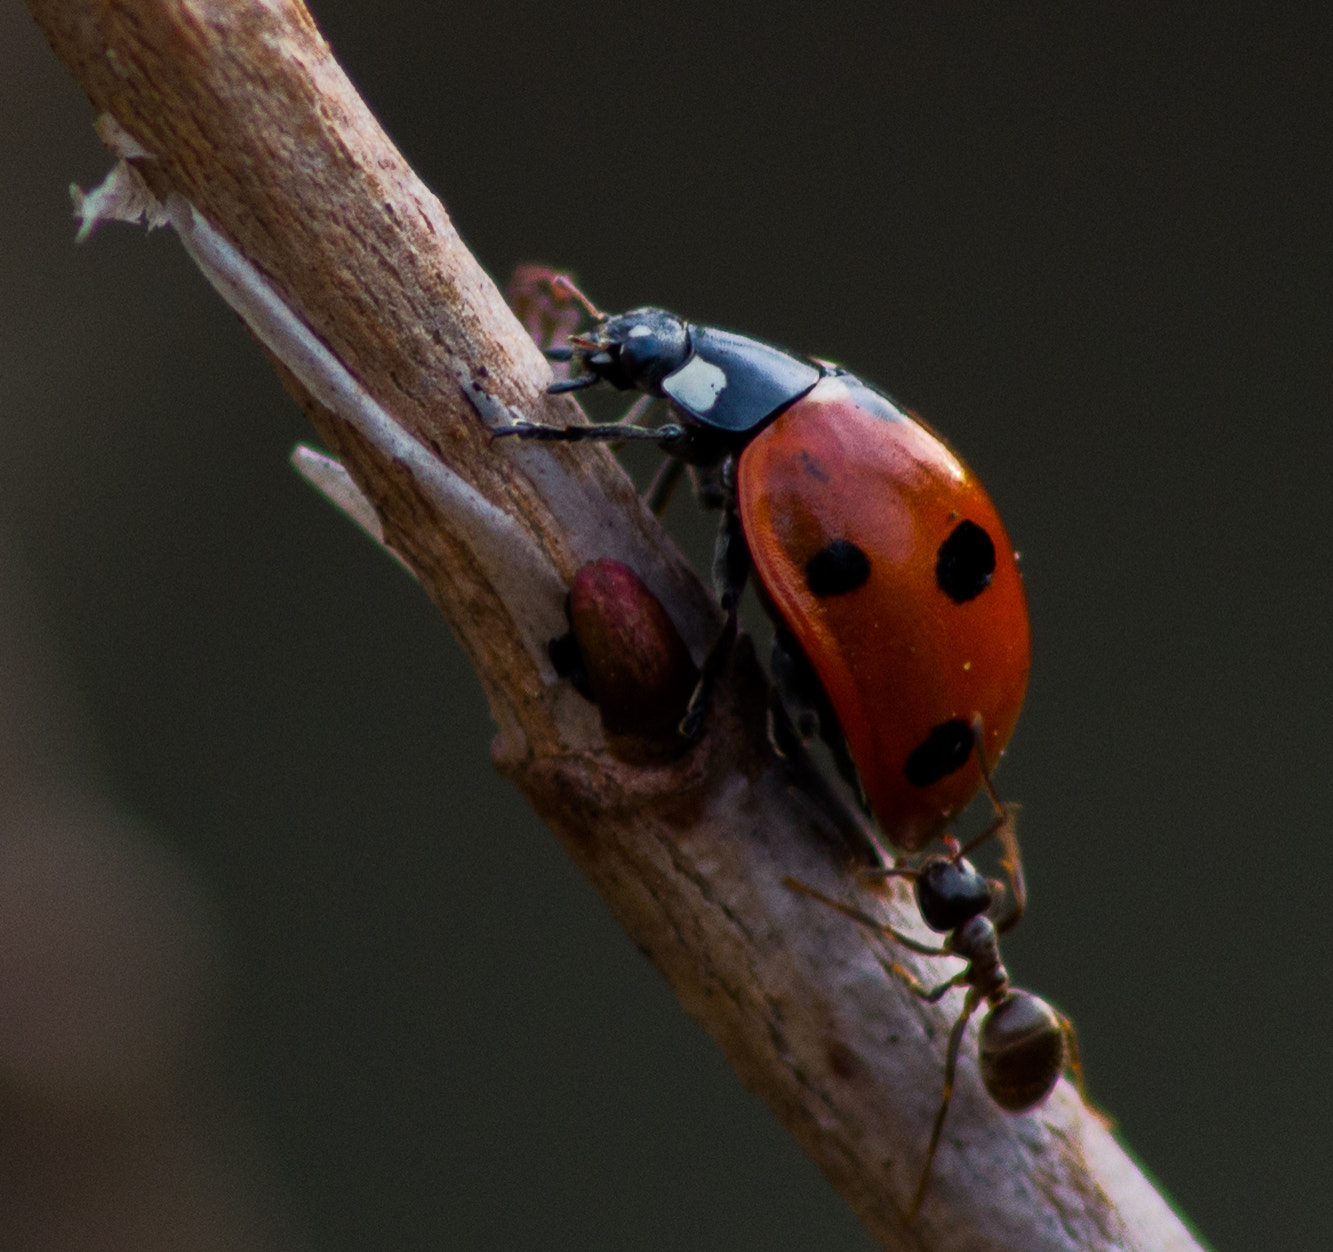 Pentax K-50 sample photo. Ladybug and ant photography